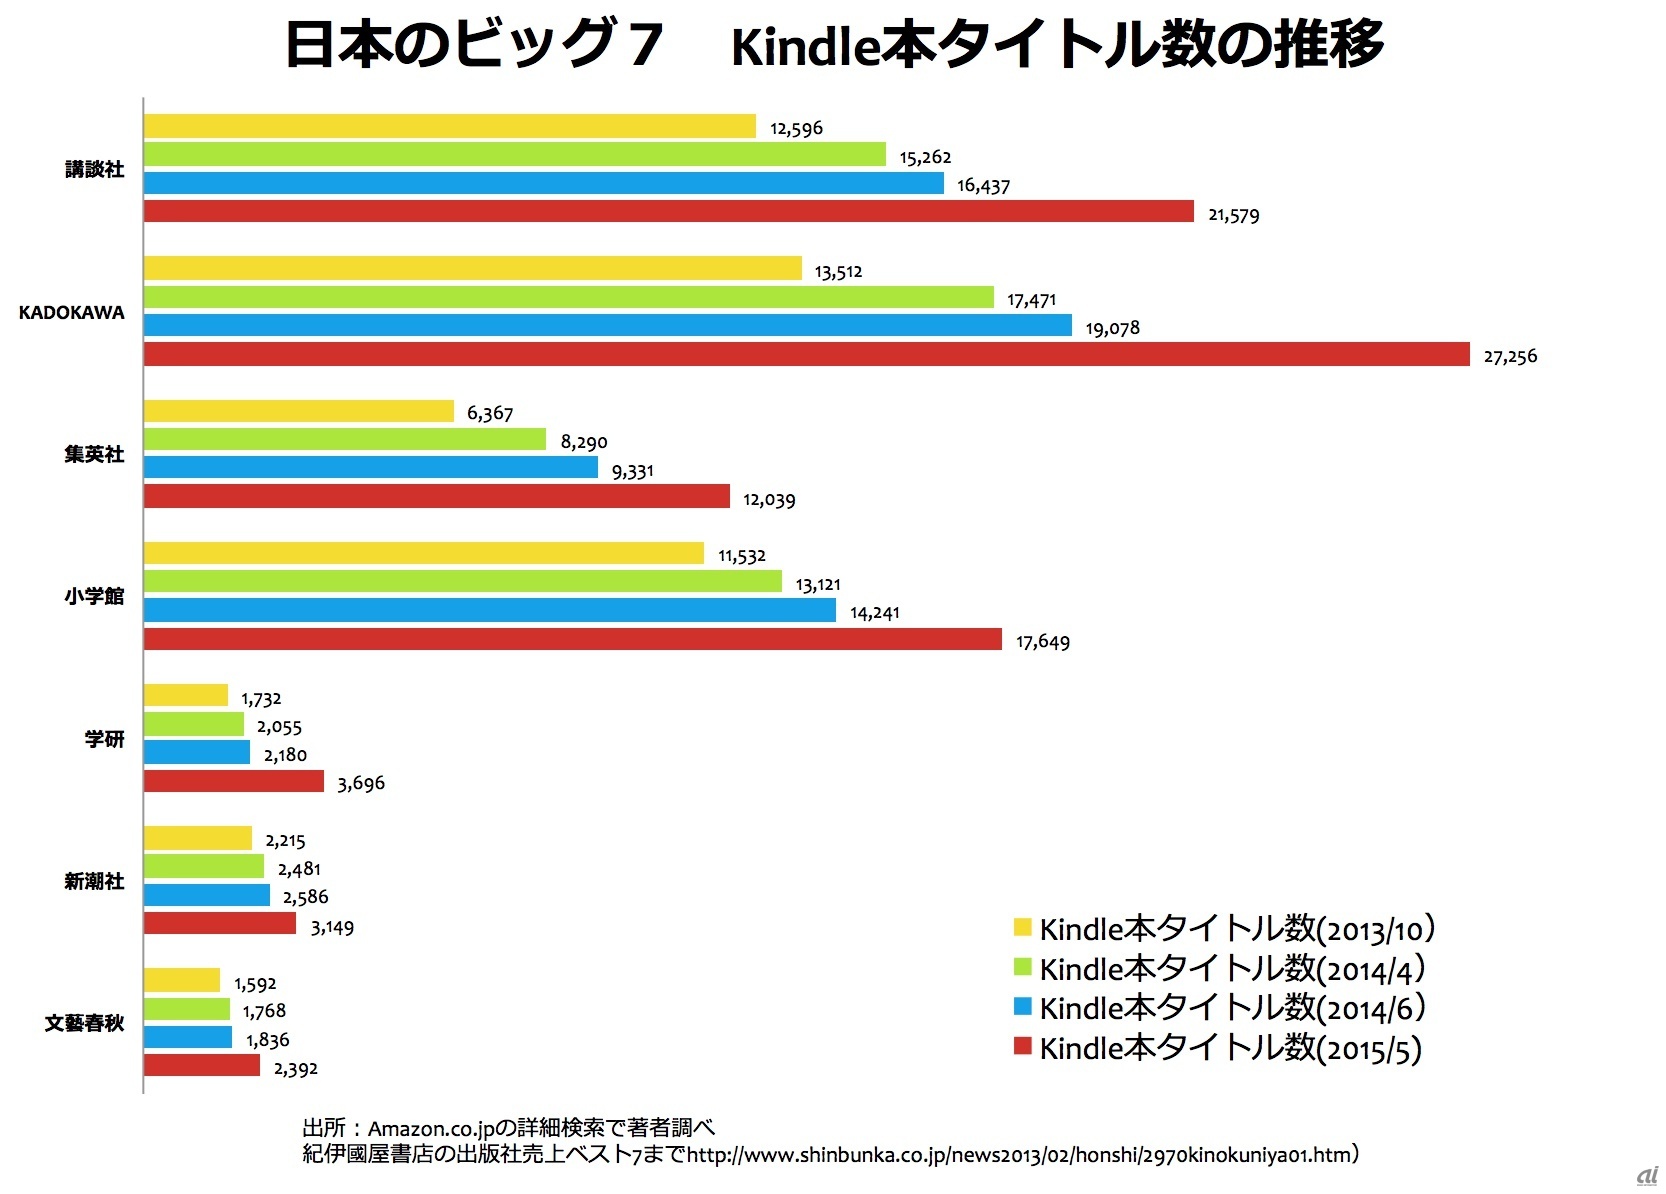 日本の大手出版7社によるKindle本タイトル数の推移